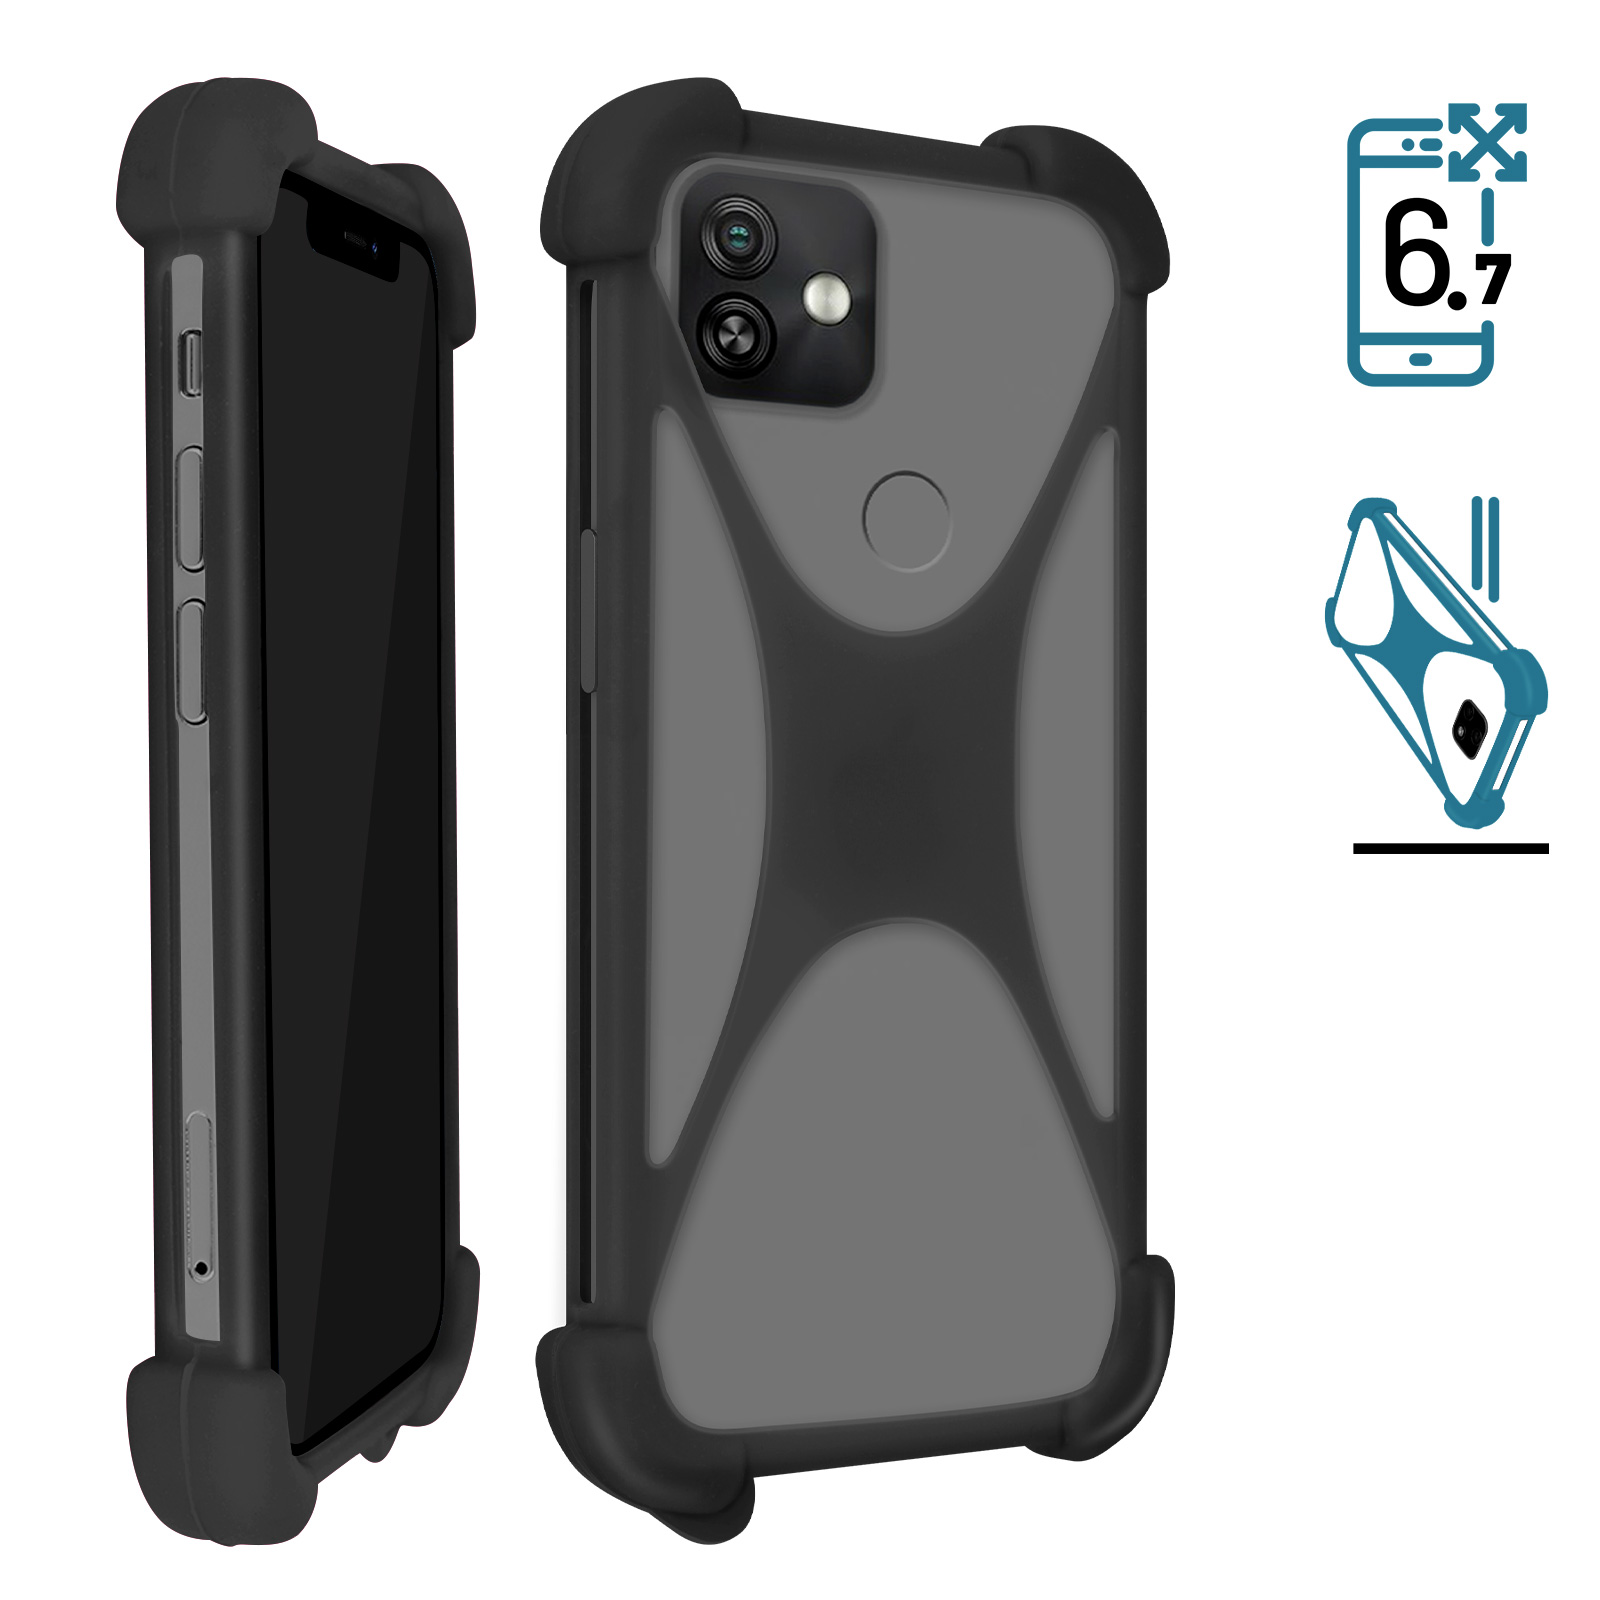 Coque Bumper noir antichoc en silicone de qualité compatible pour V-Mobile S9 2019 by PH26® 